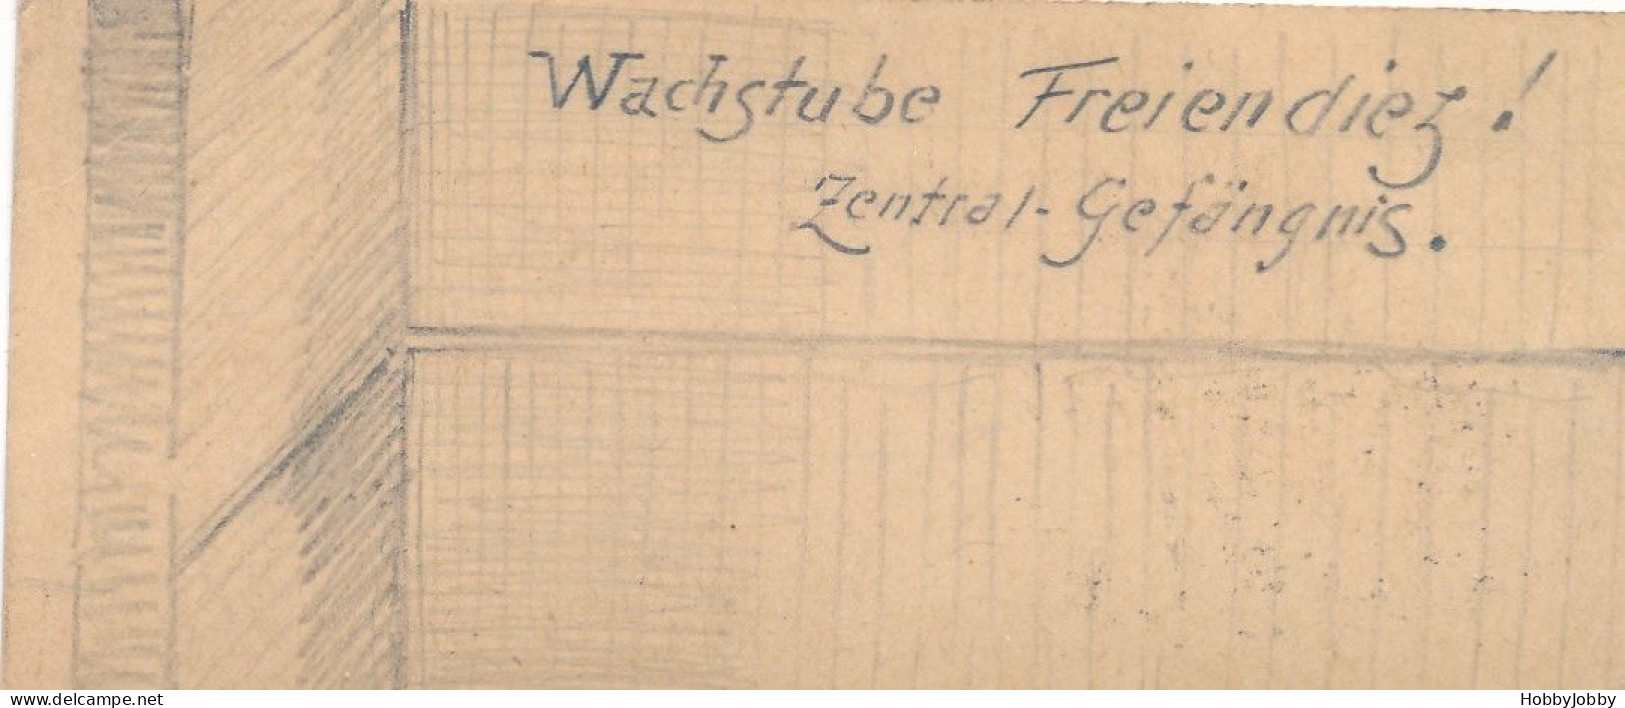 2 Stück I. WK Handgezeichnet-Bleistift:Wach-Stube Kaiser-Wilhelm-Kaserne + Wachstube-Freiendiez! Zentral Gefägnis. - Kasernen